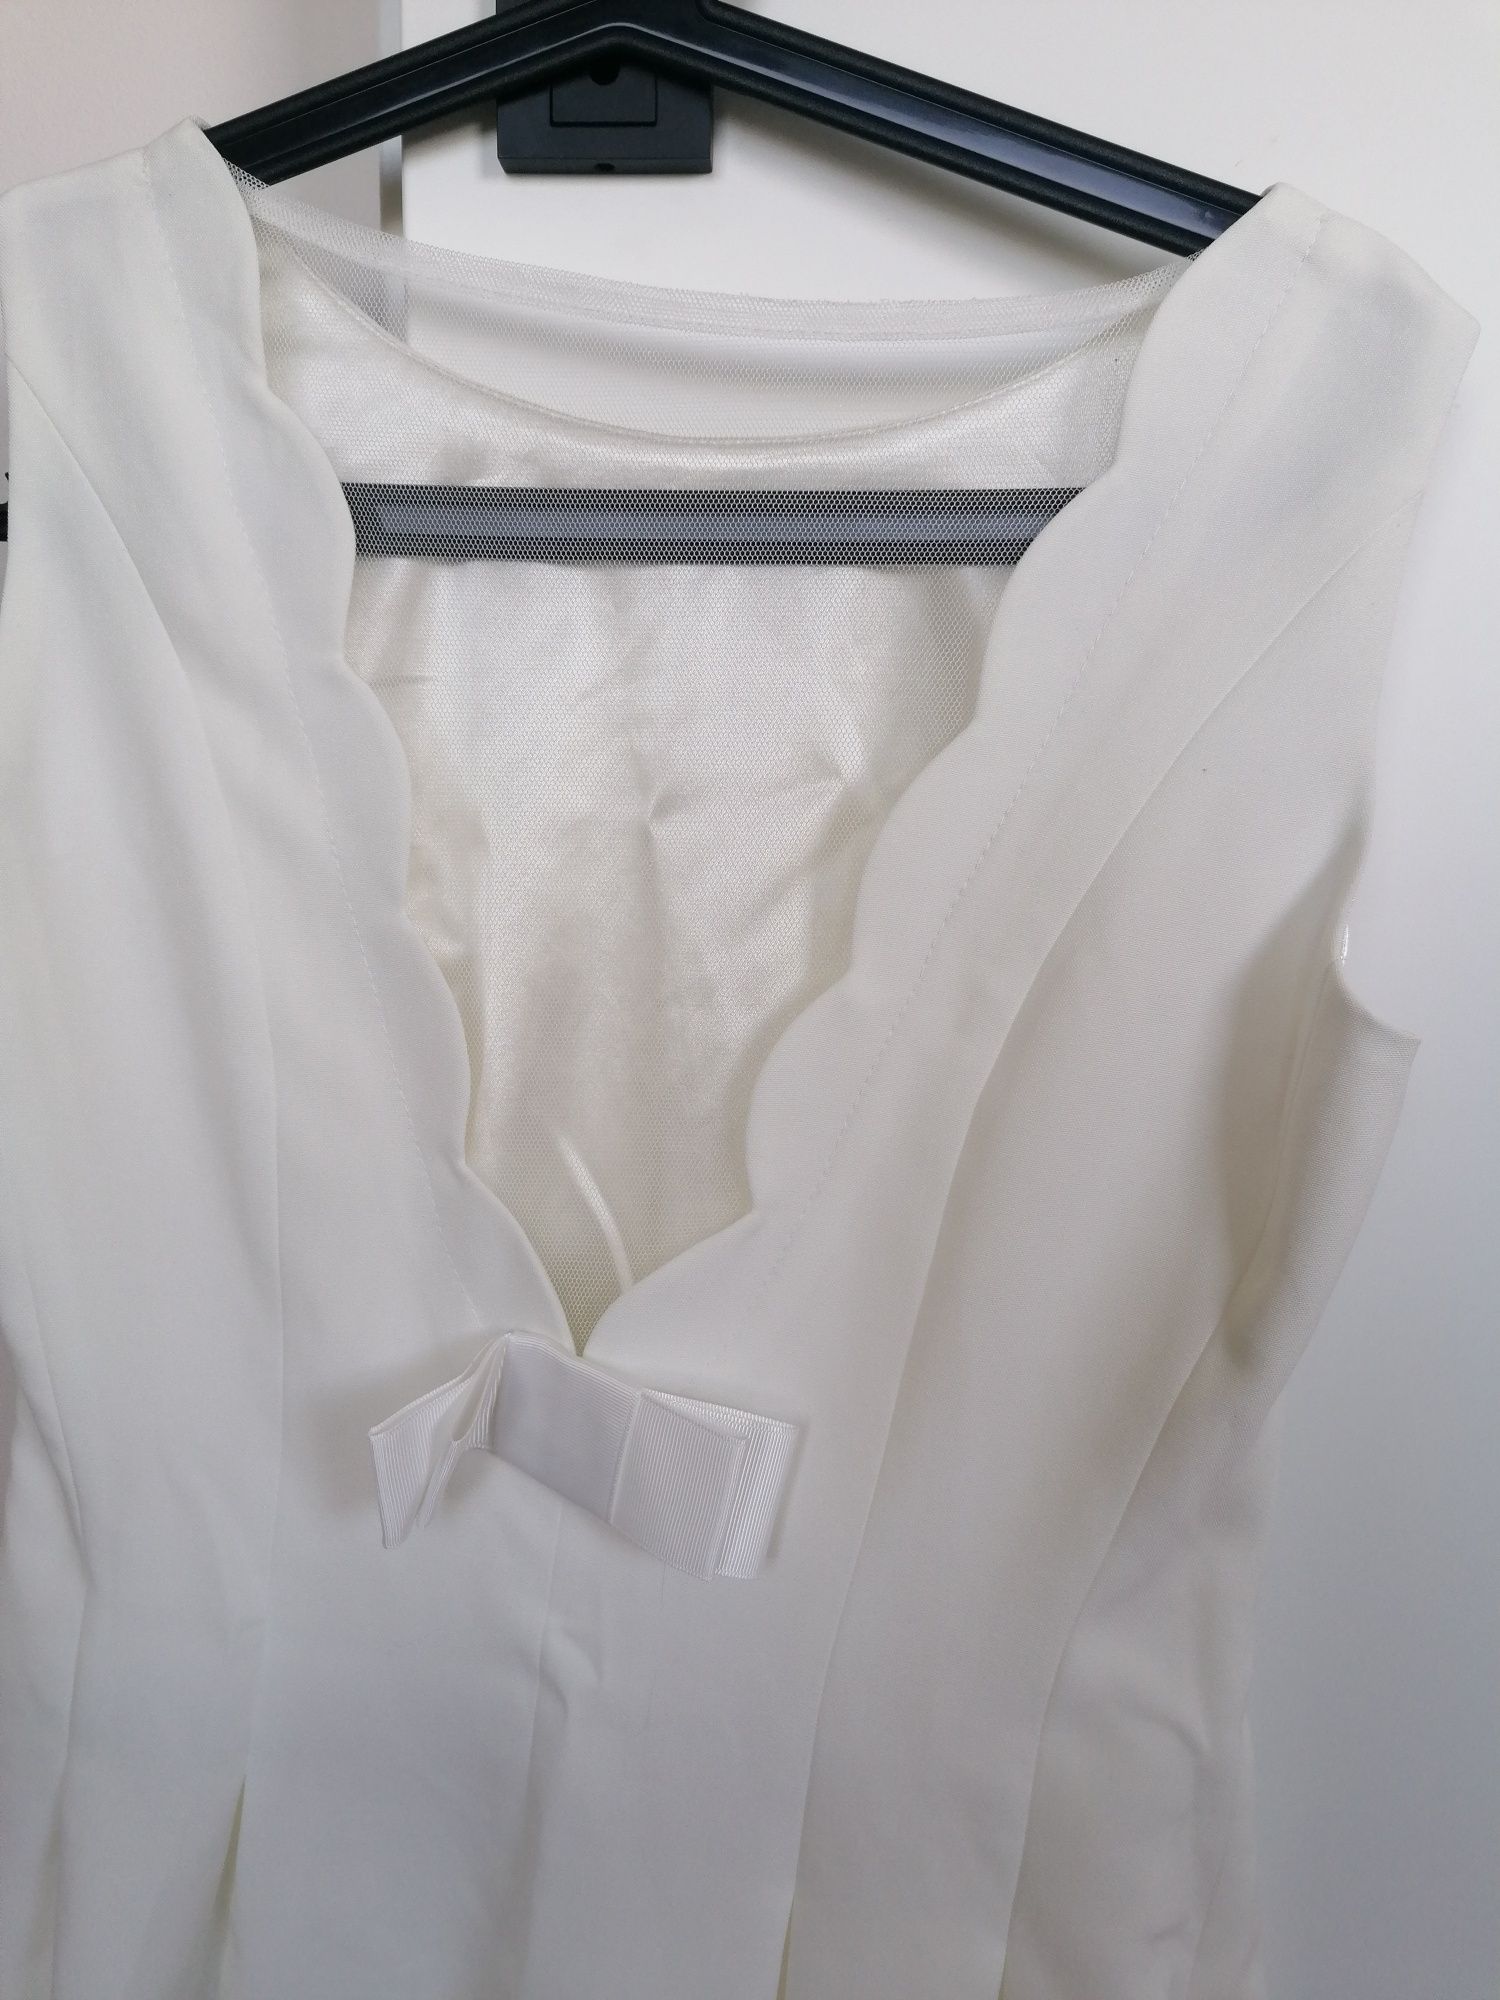 Sukienka biała kremowa komunia Chrzciny wesele siateczka na ramiączka